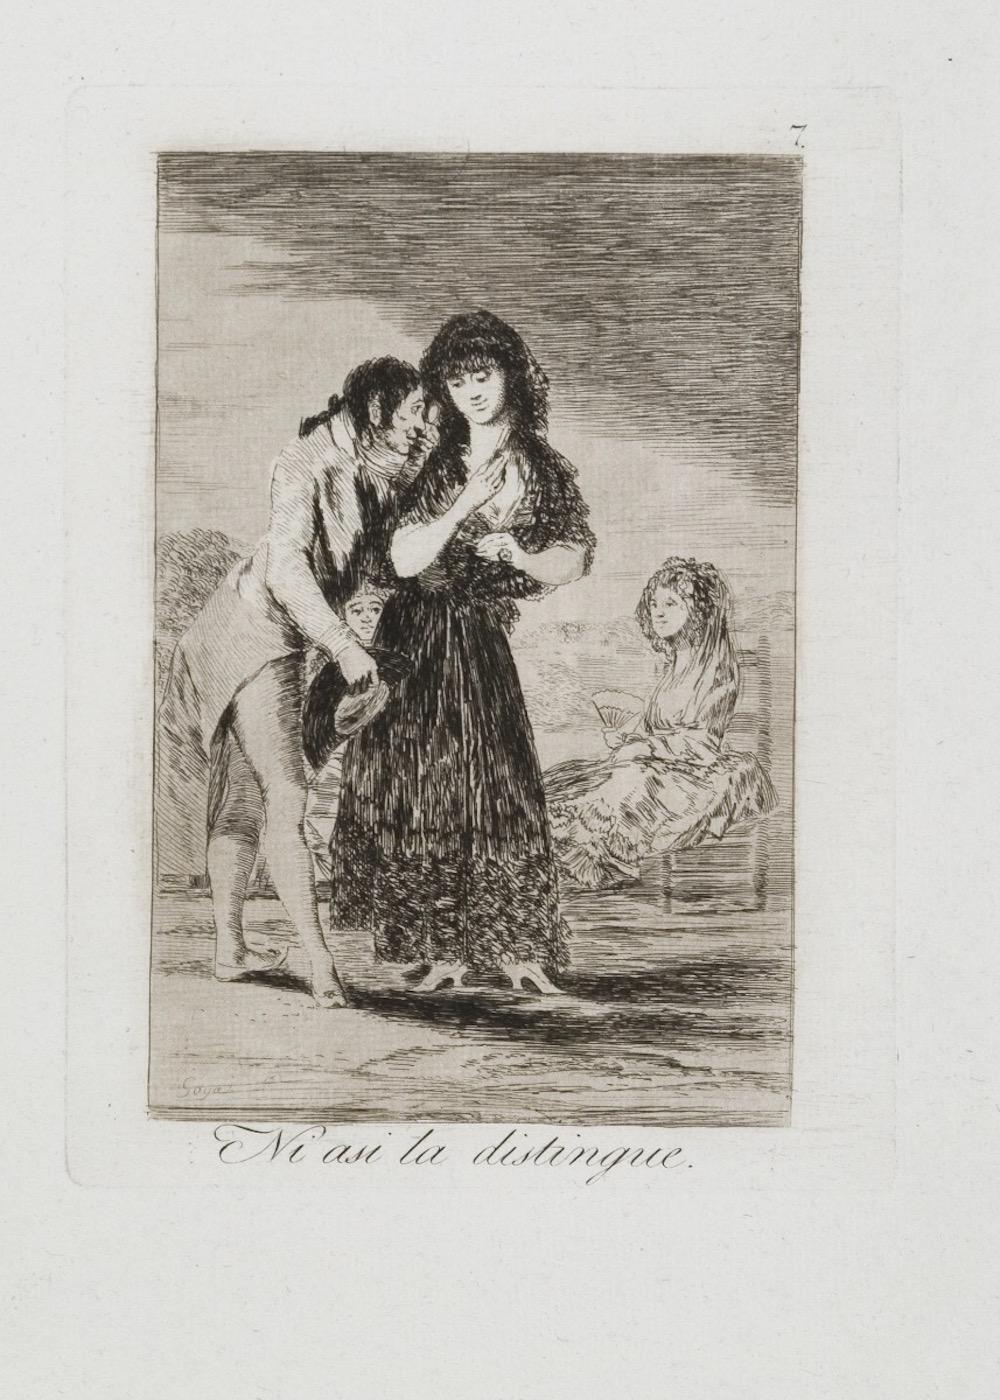 "Ni asi la Distingue" ist eine Original-Aquatinta von Francisco Goya aus dem Jahr 1799, aus  Serie Los Caprichos, Tafel 7, erste Ausgabe.

Selten und in sehr gutem Zustand. 

 Los Caprichos
Los Caprichos, das am 6. Februar 1799, am Ende des letzten